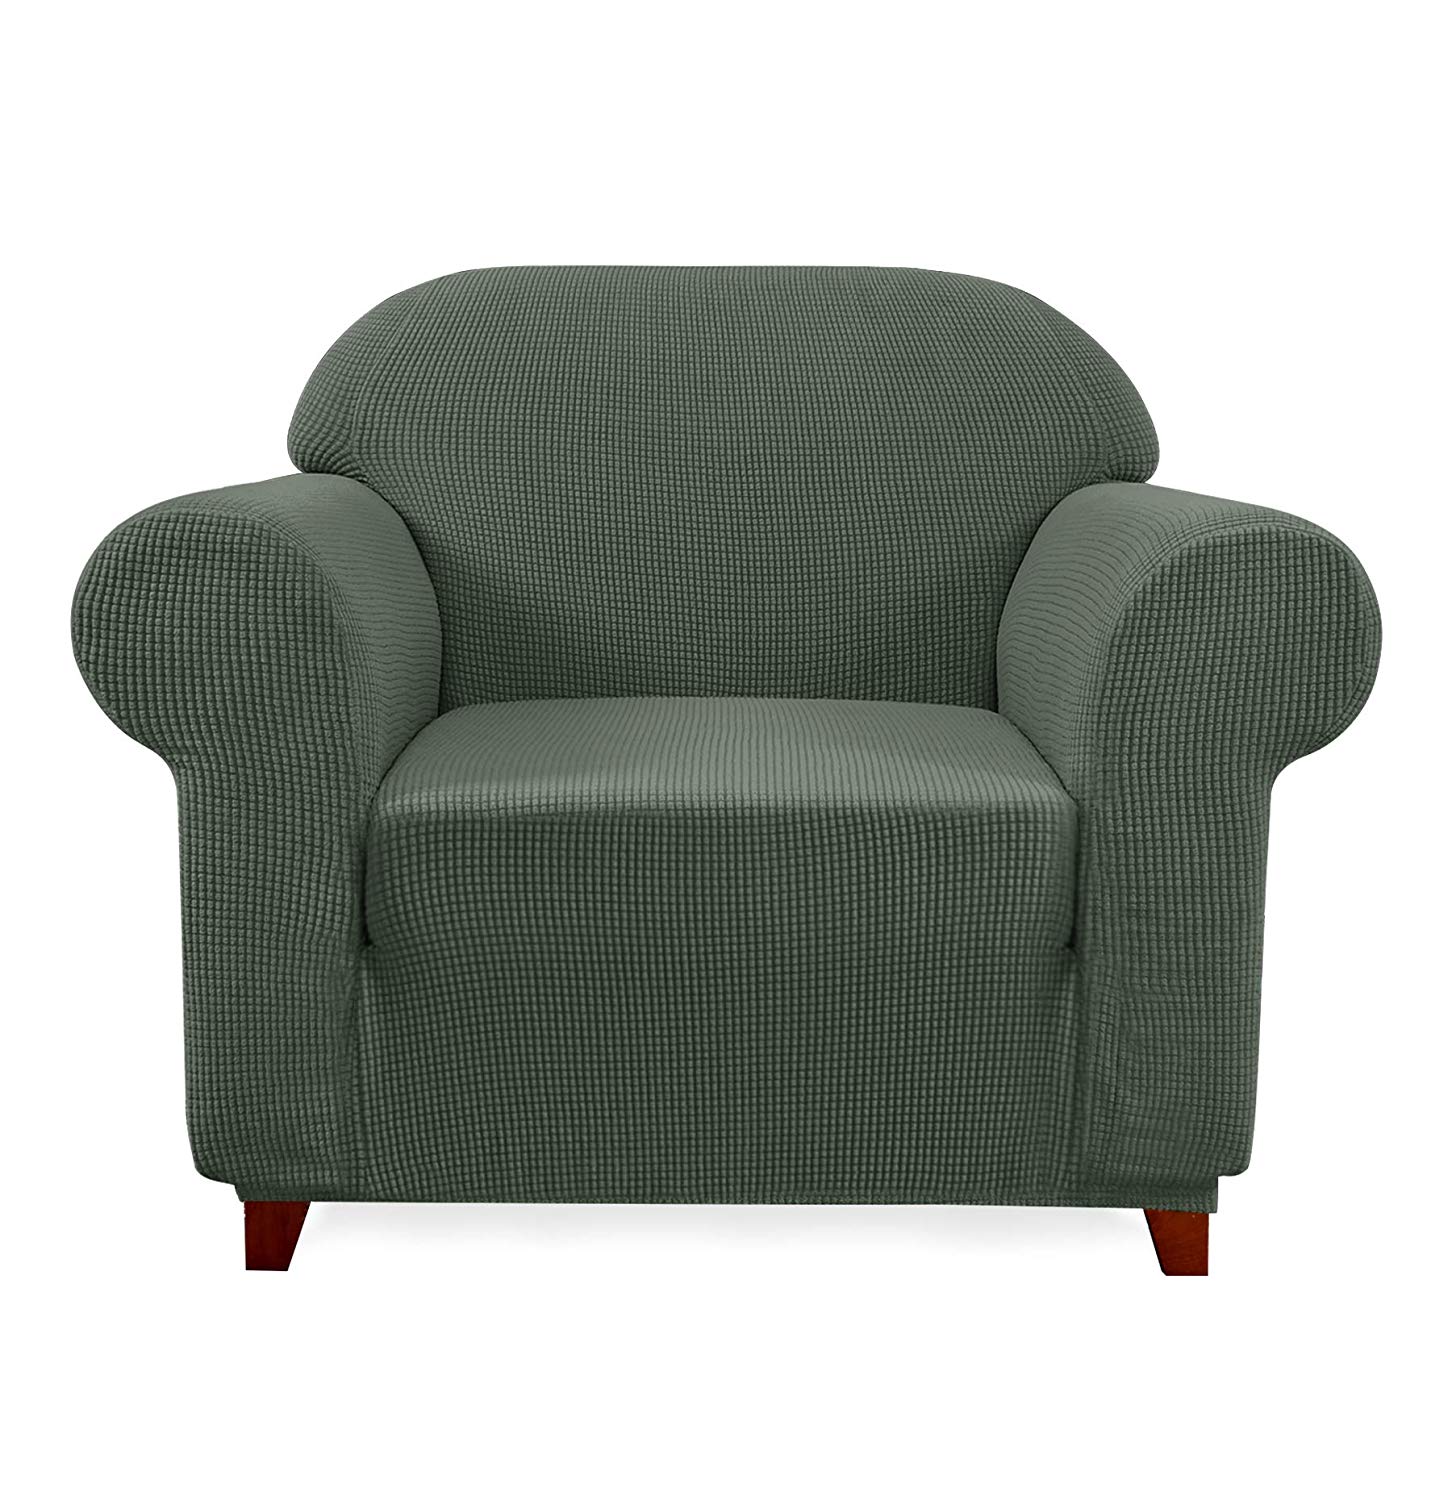 Chair / Green Plaid